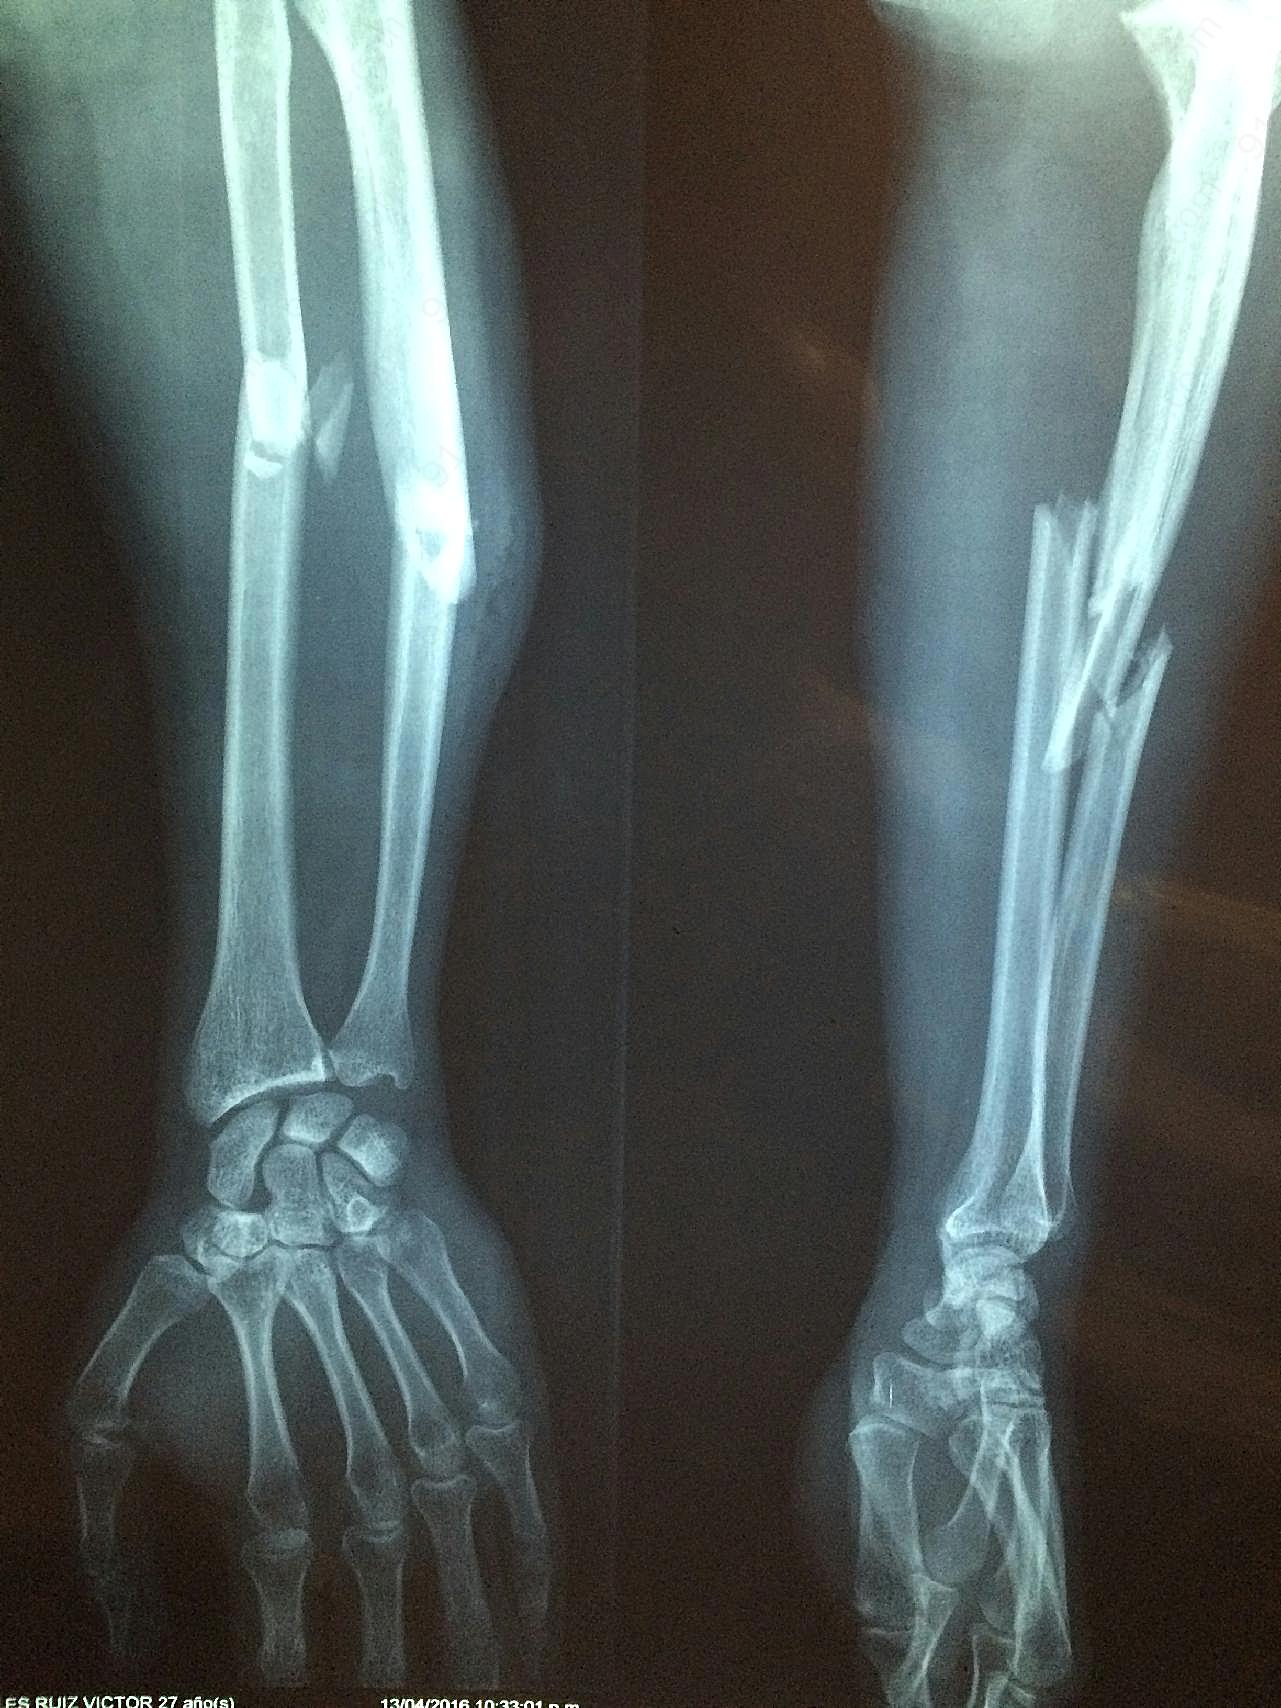 手骨骨折x光片图片摄影